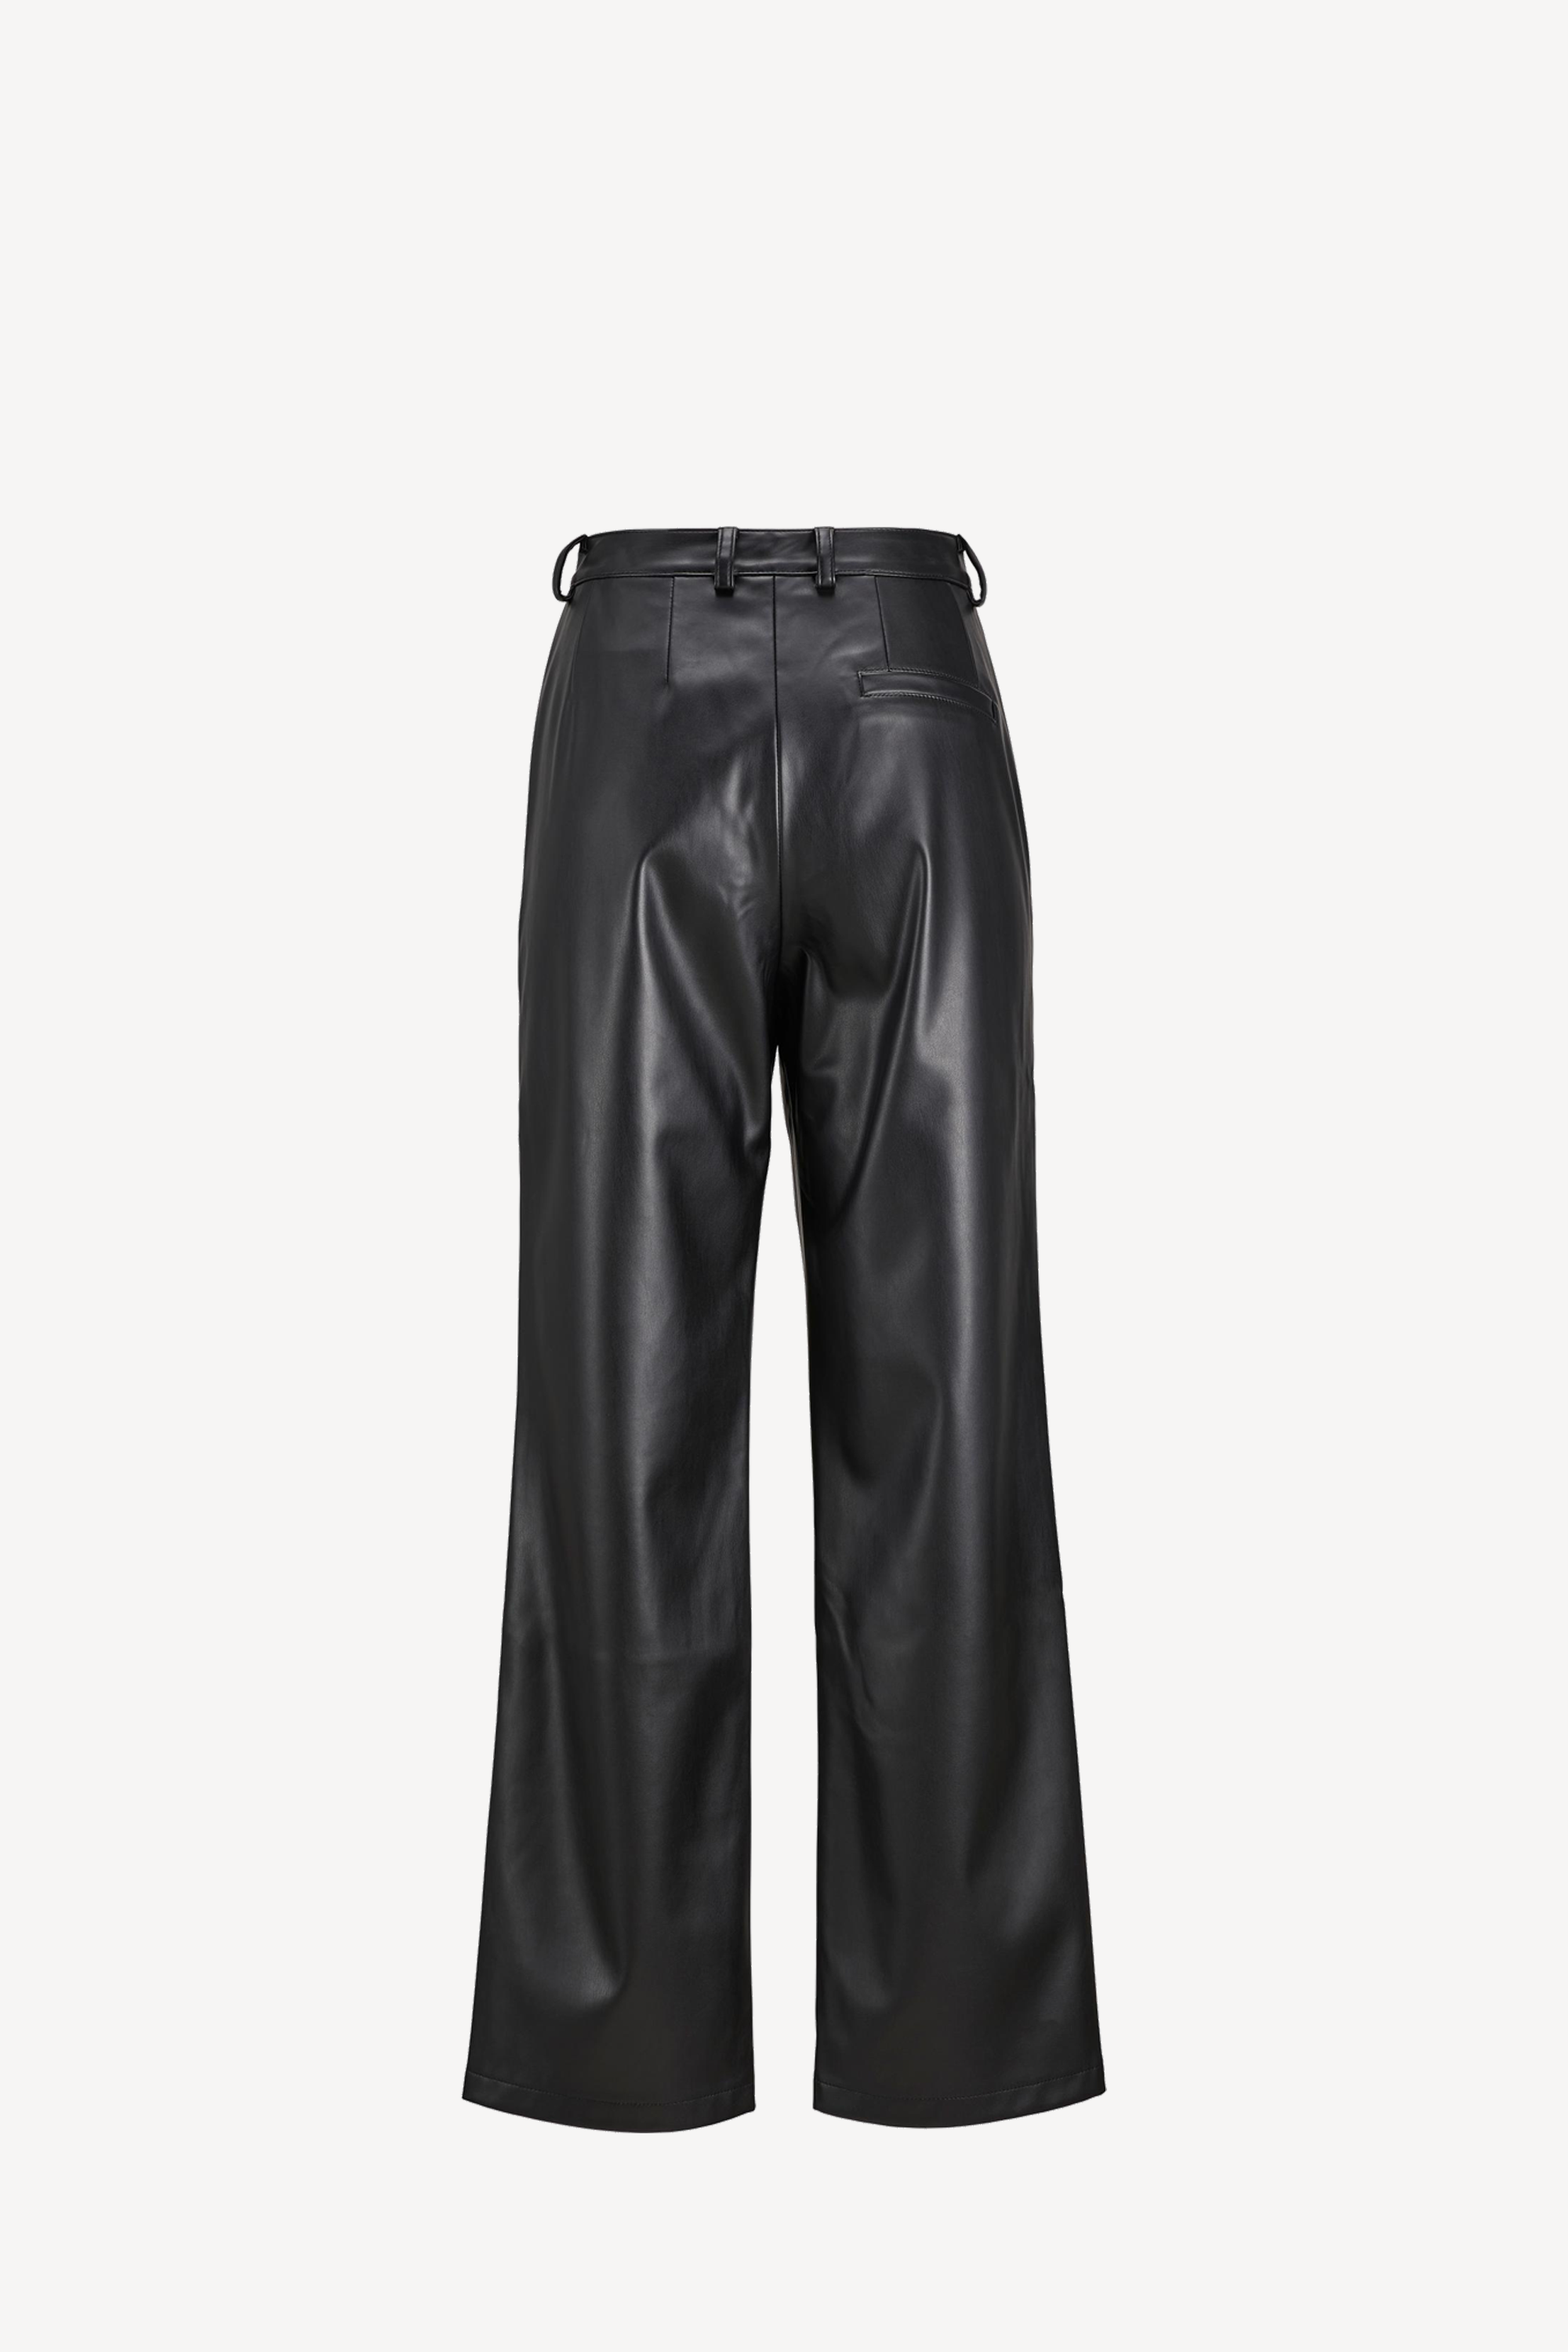 Marie Faux Leather Pants Black